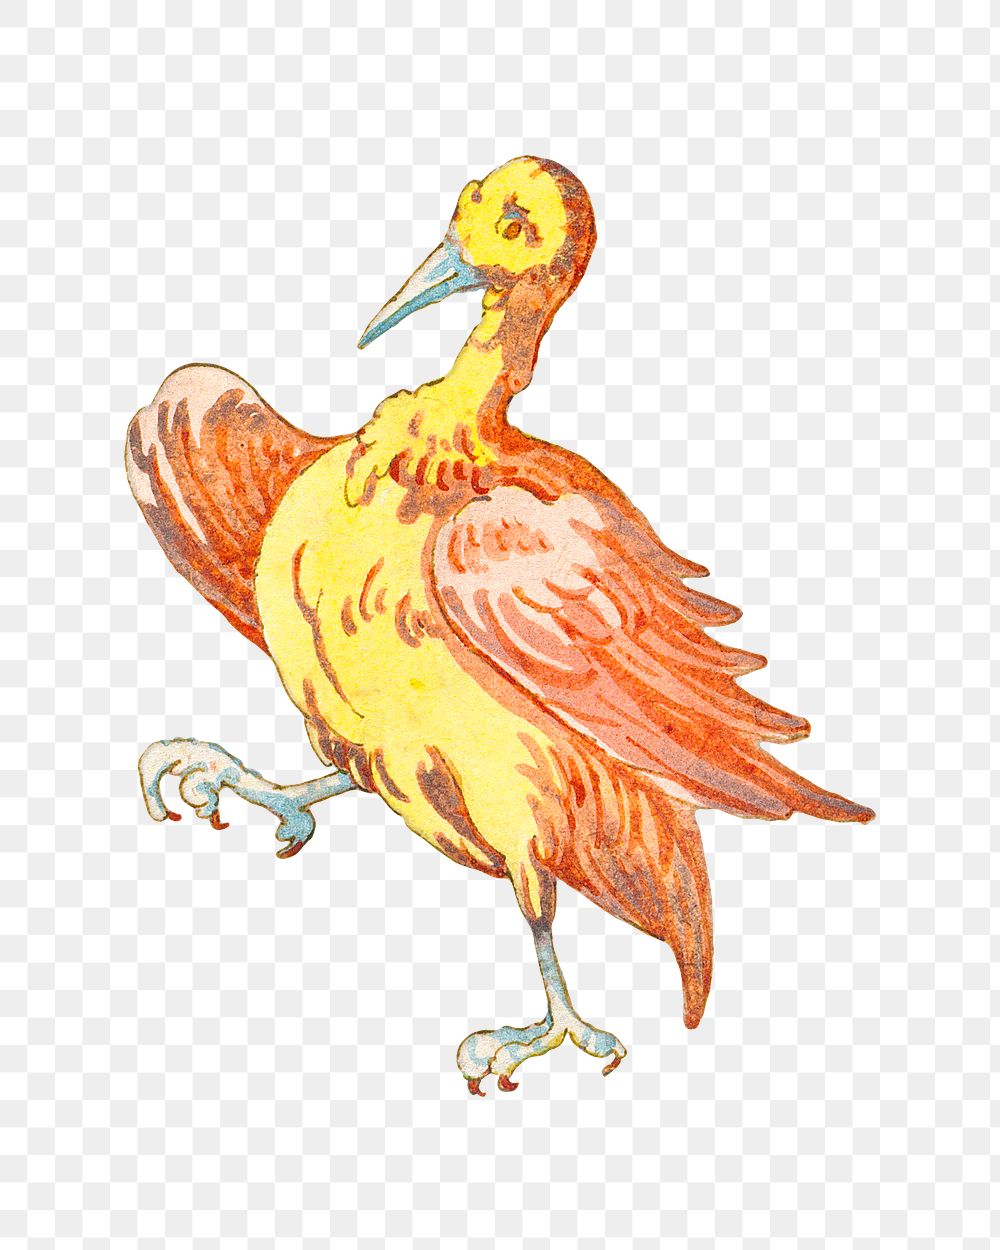 Vintage yellow bird design element